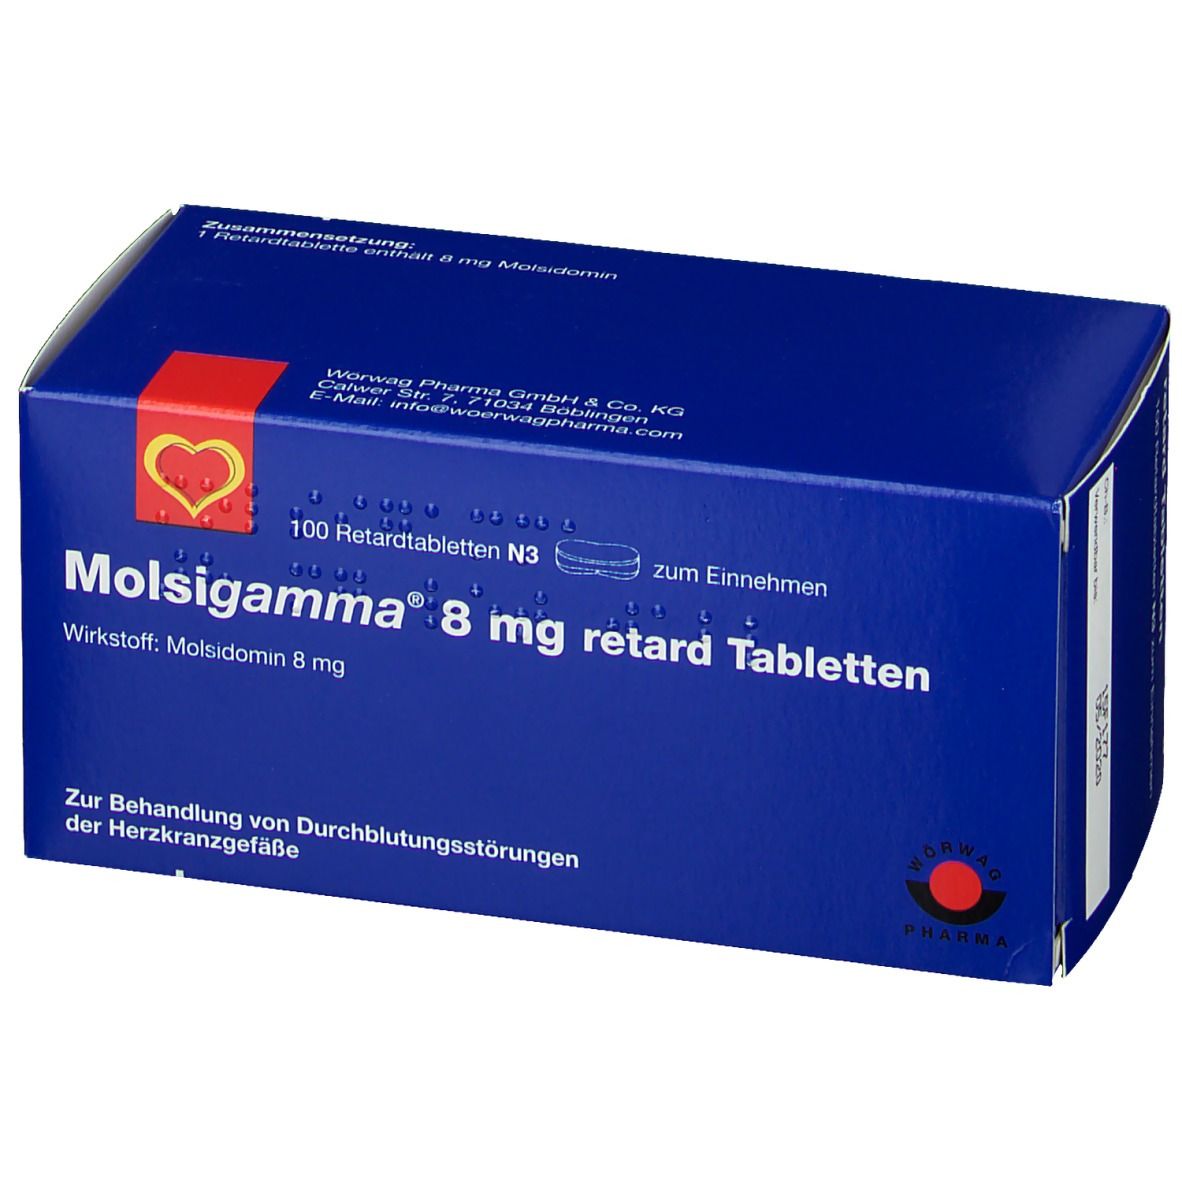 MOLSIGAMMA 8 mg Retardtabletten